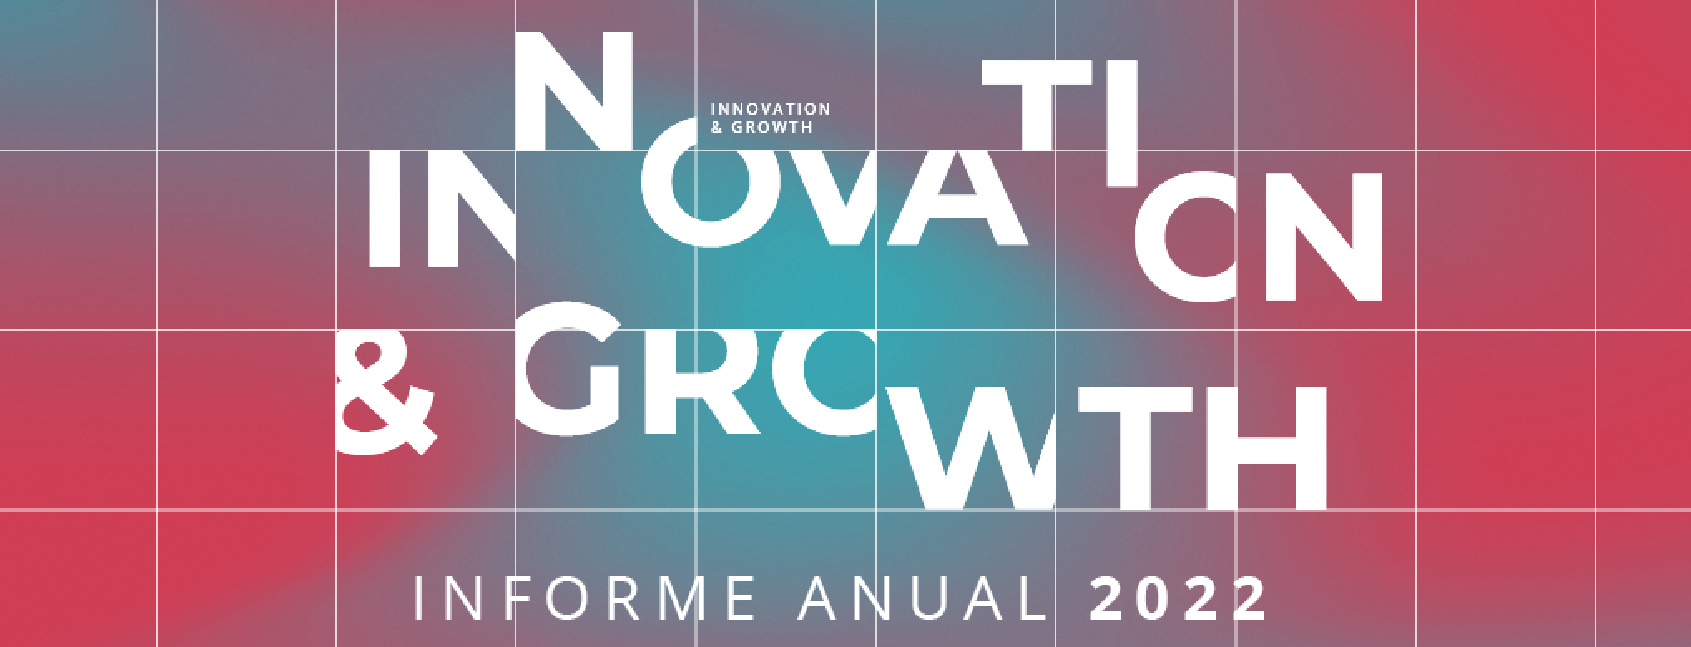 A LLYC apresenta “Innovation & Growth” em seu Relatório anual de 2022